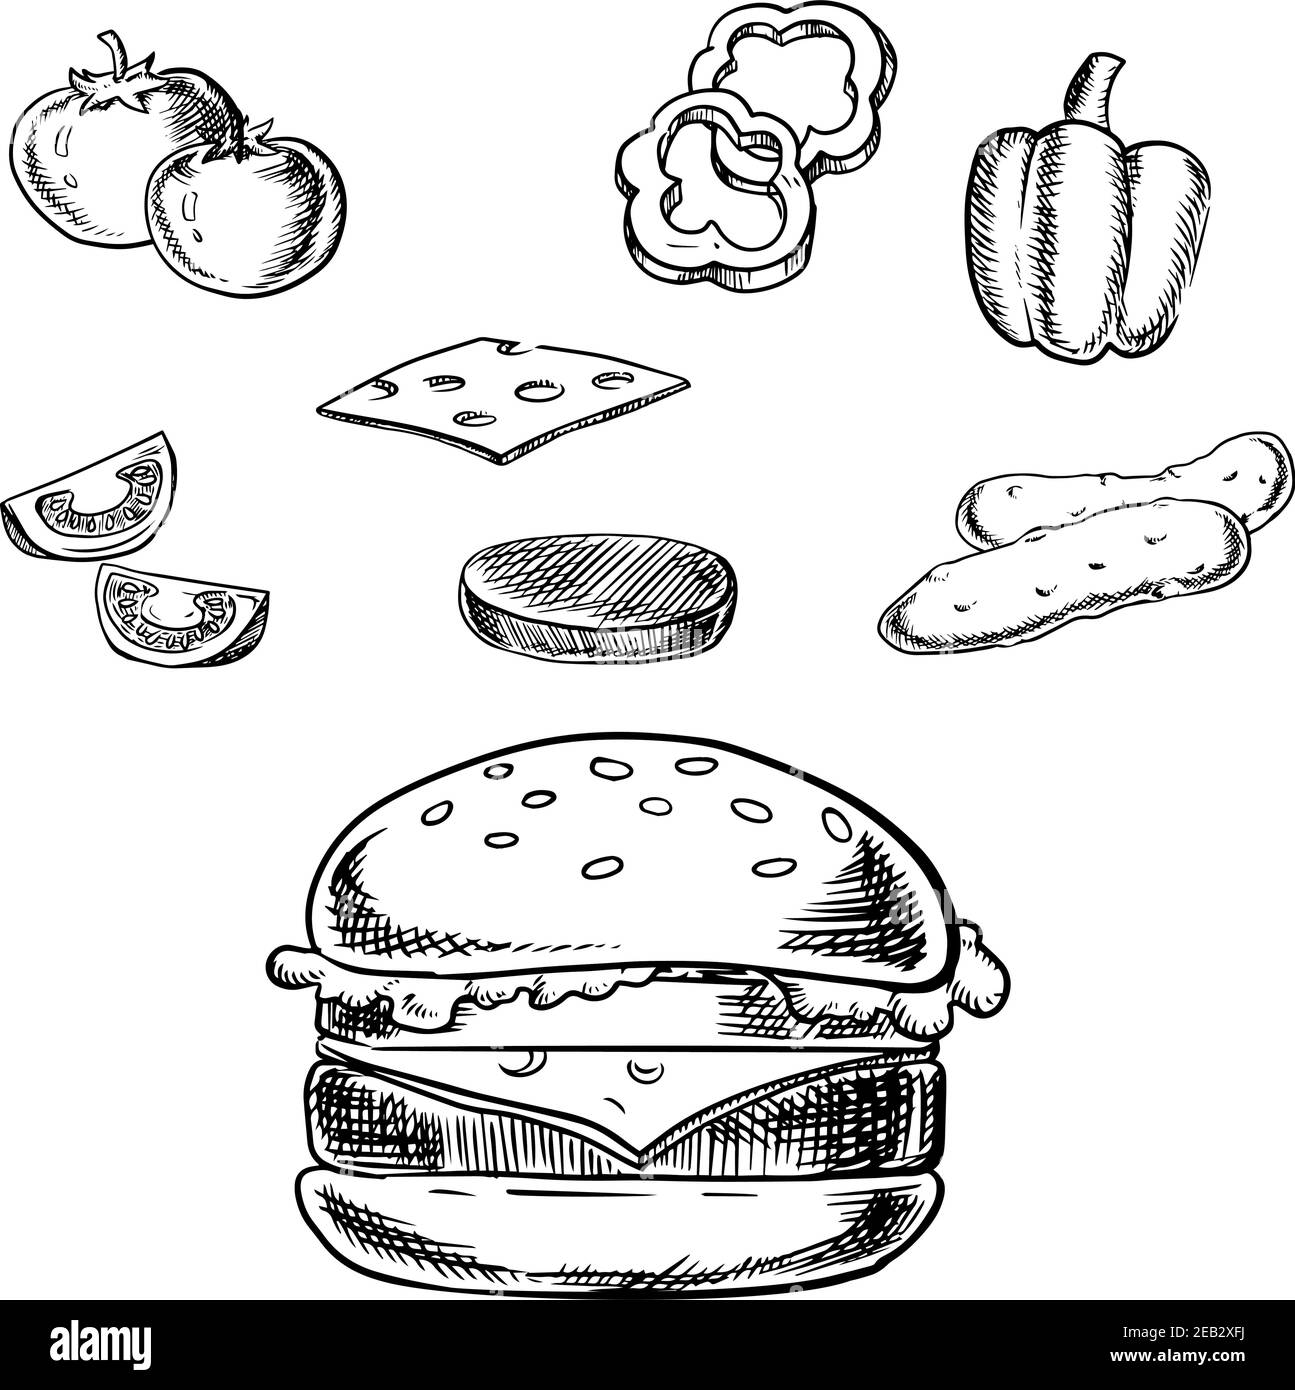 Cheeseburger sketch avec patty grillée, fromage, tomates fraîches, concombres, légumes au poivron et pain de blé au sésame. Illustration de Vecteur